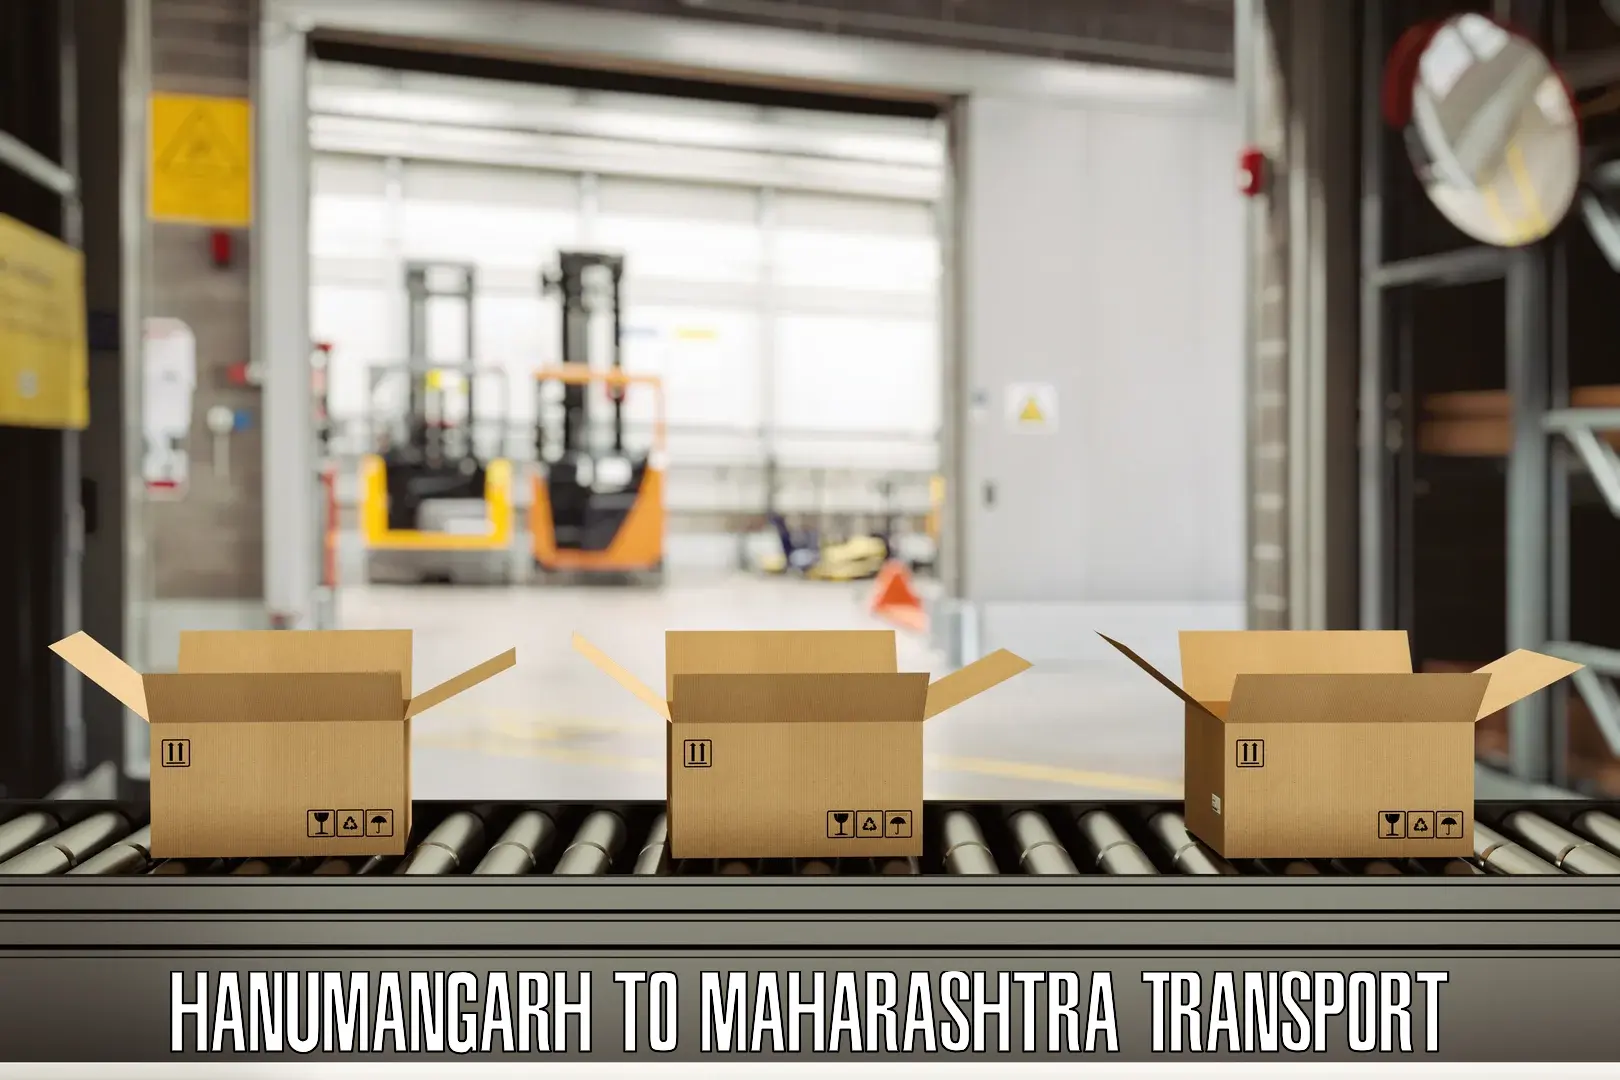 Nearby transport service Hanumangarh to Maharashtra